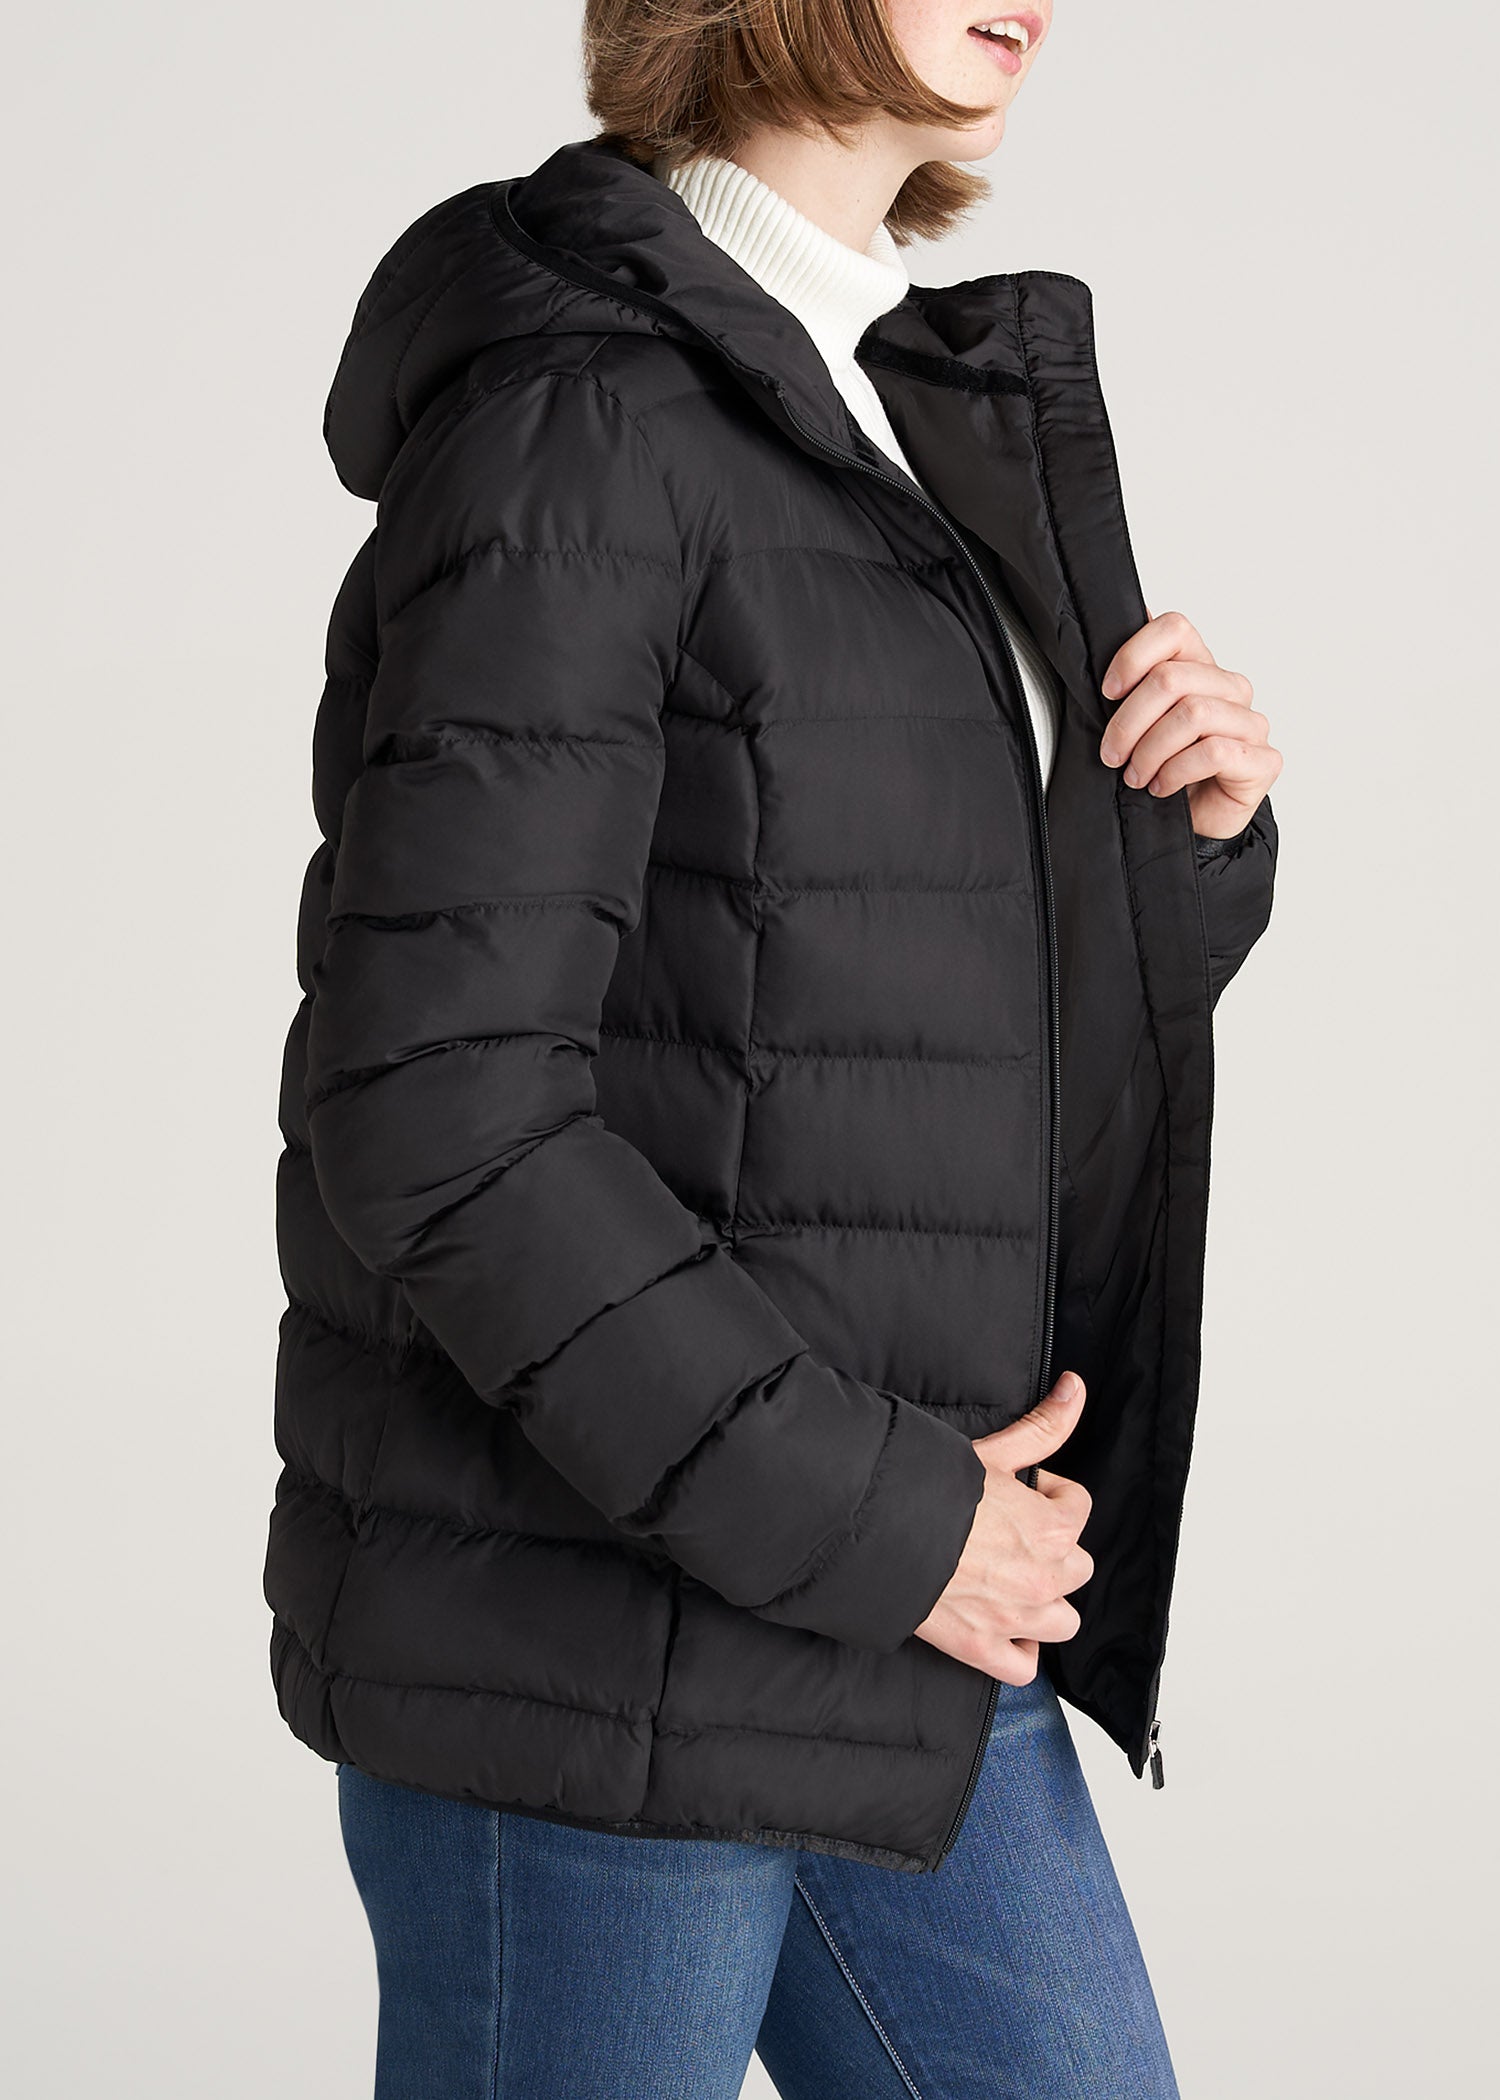 Women's Puffer Jackets, Black & Long Puffer Coats